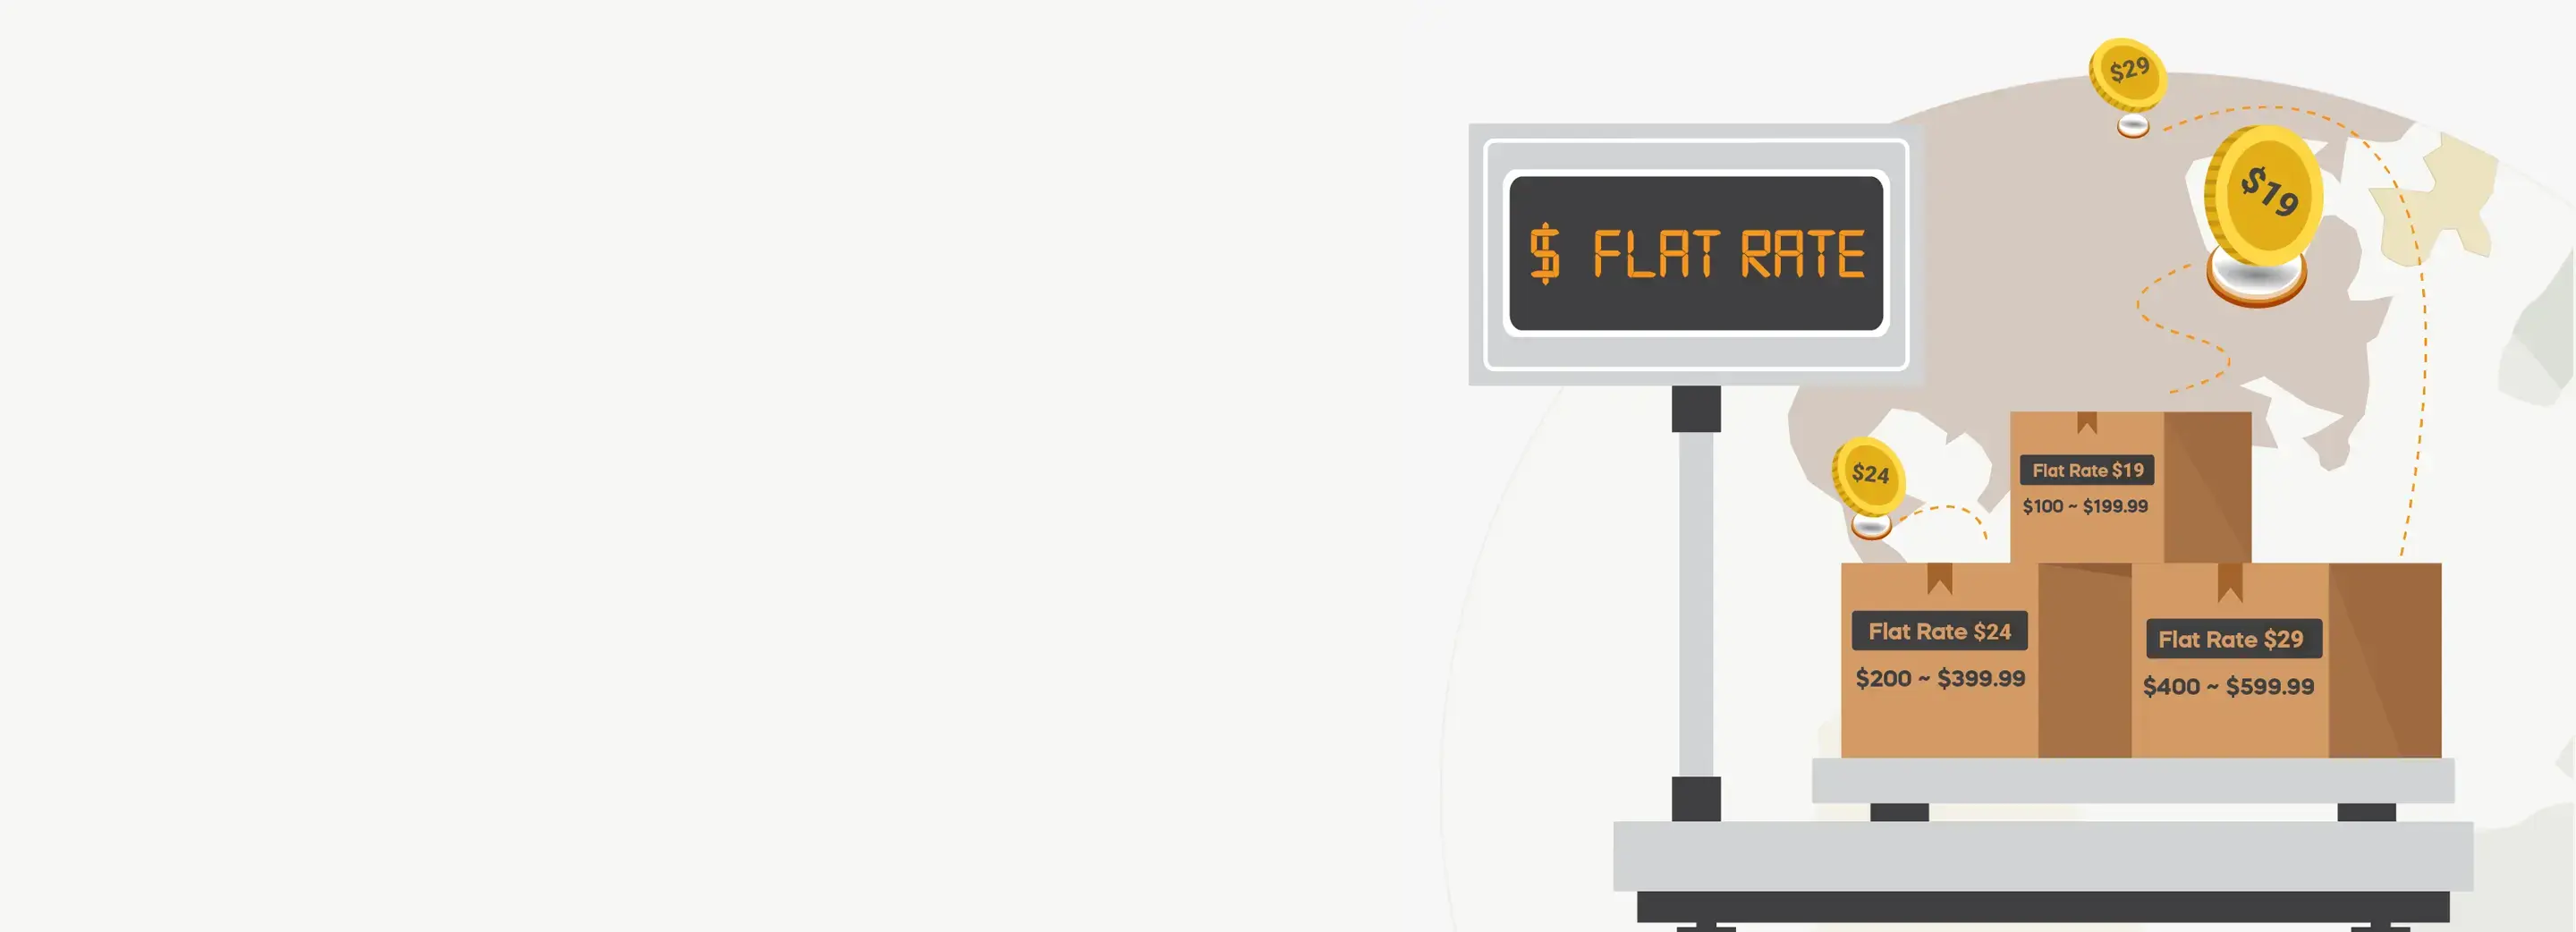 flat_rate_desktop